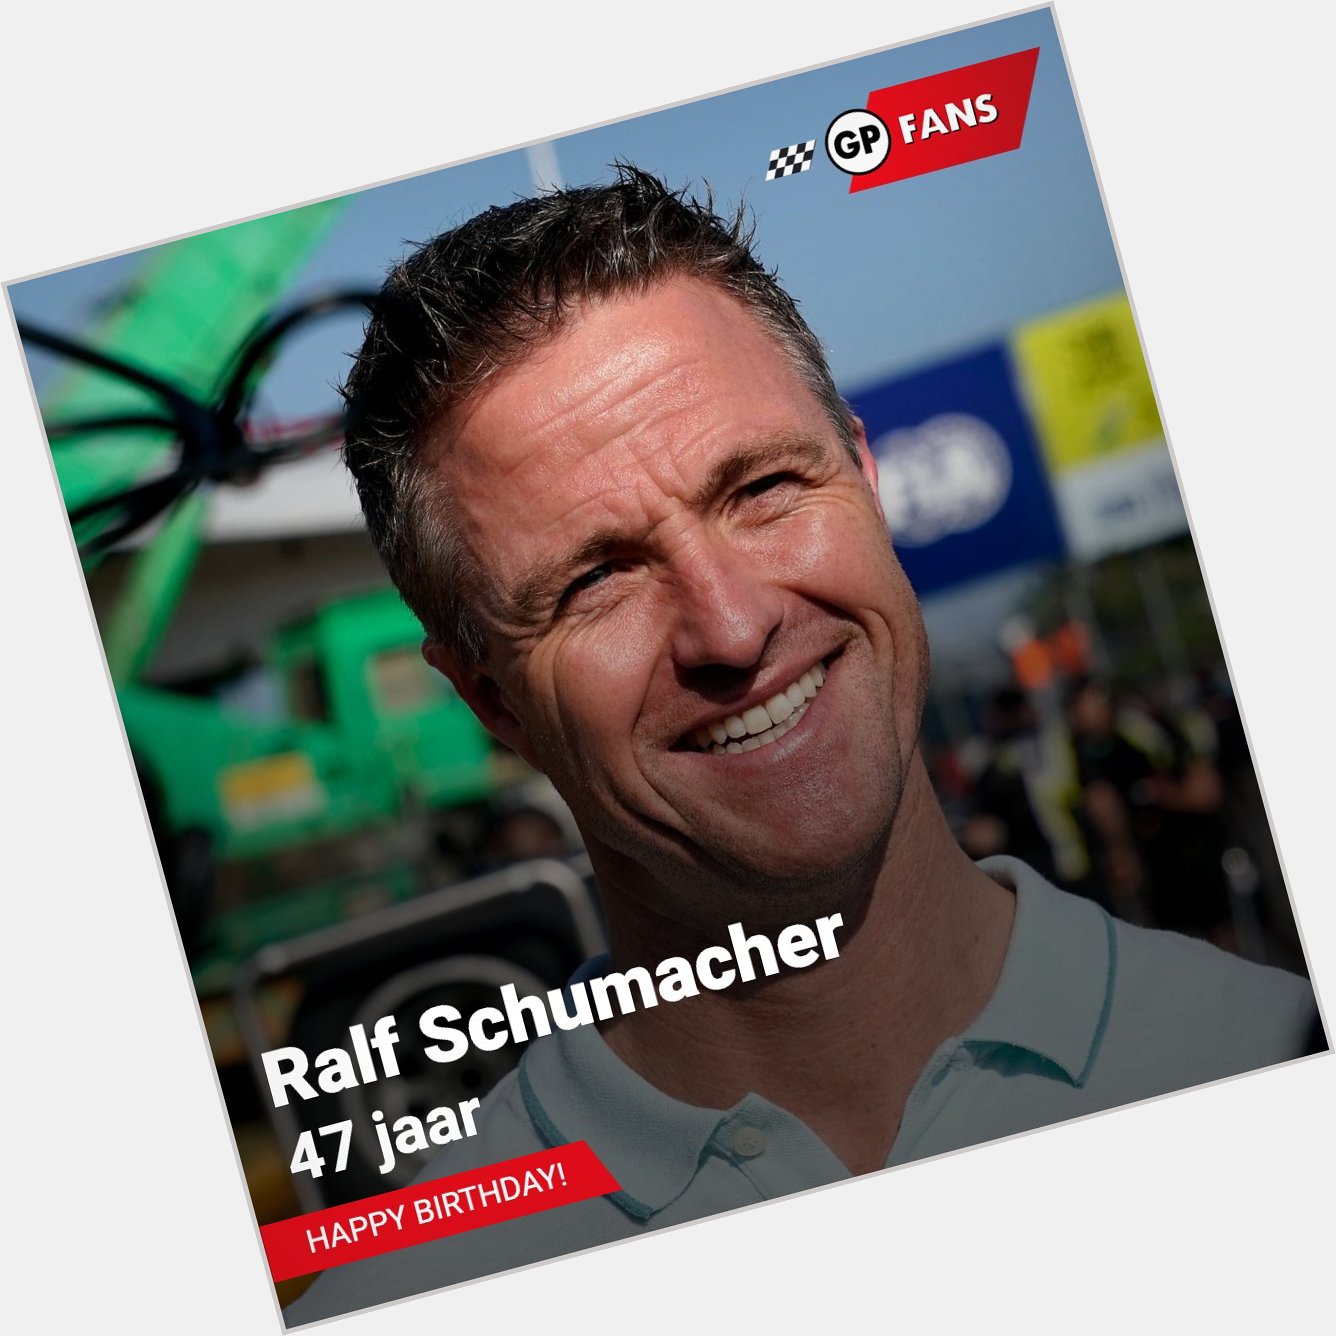 Ralf Schumacher viert vandaag zijn 47ste verjaardag. Happy birthday Ralf!   